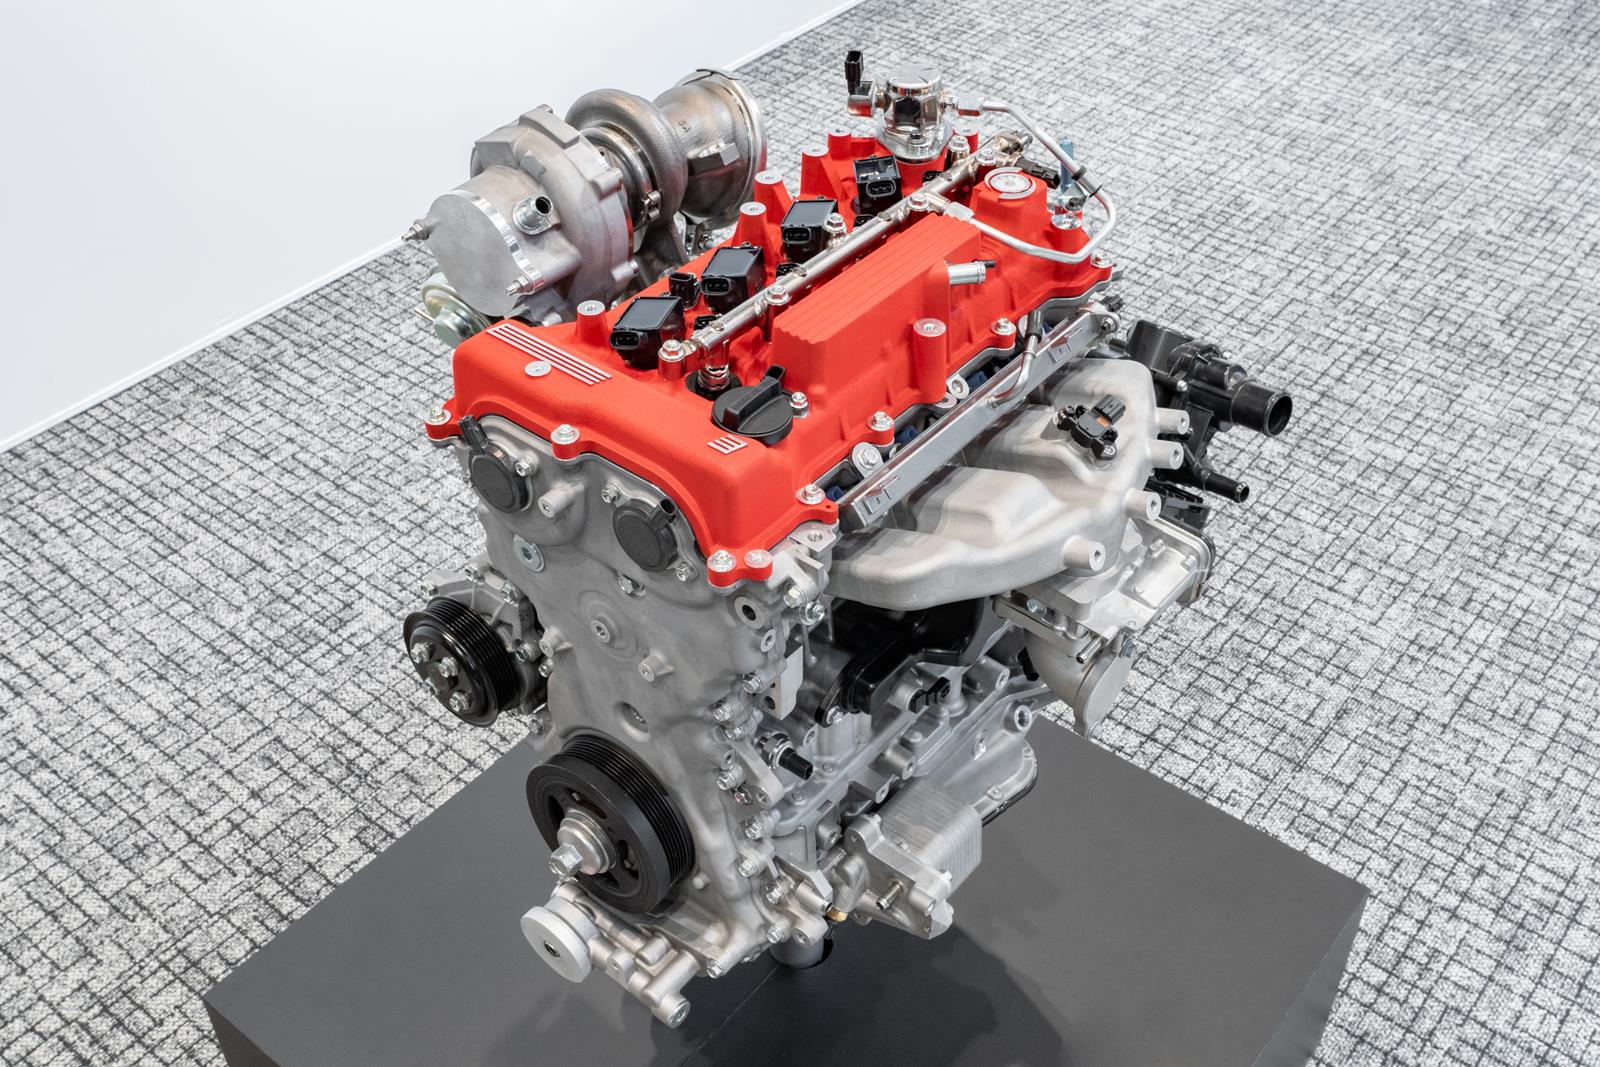 Mesin baru Toyota berkapasitas 2,0 liter turbo